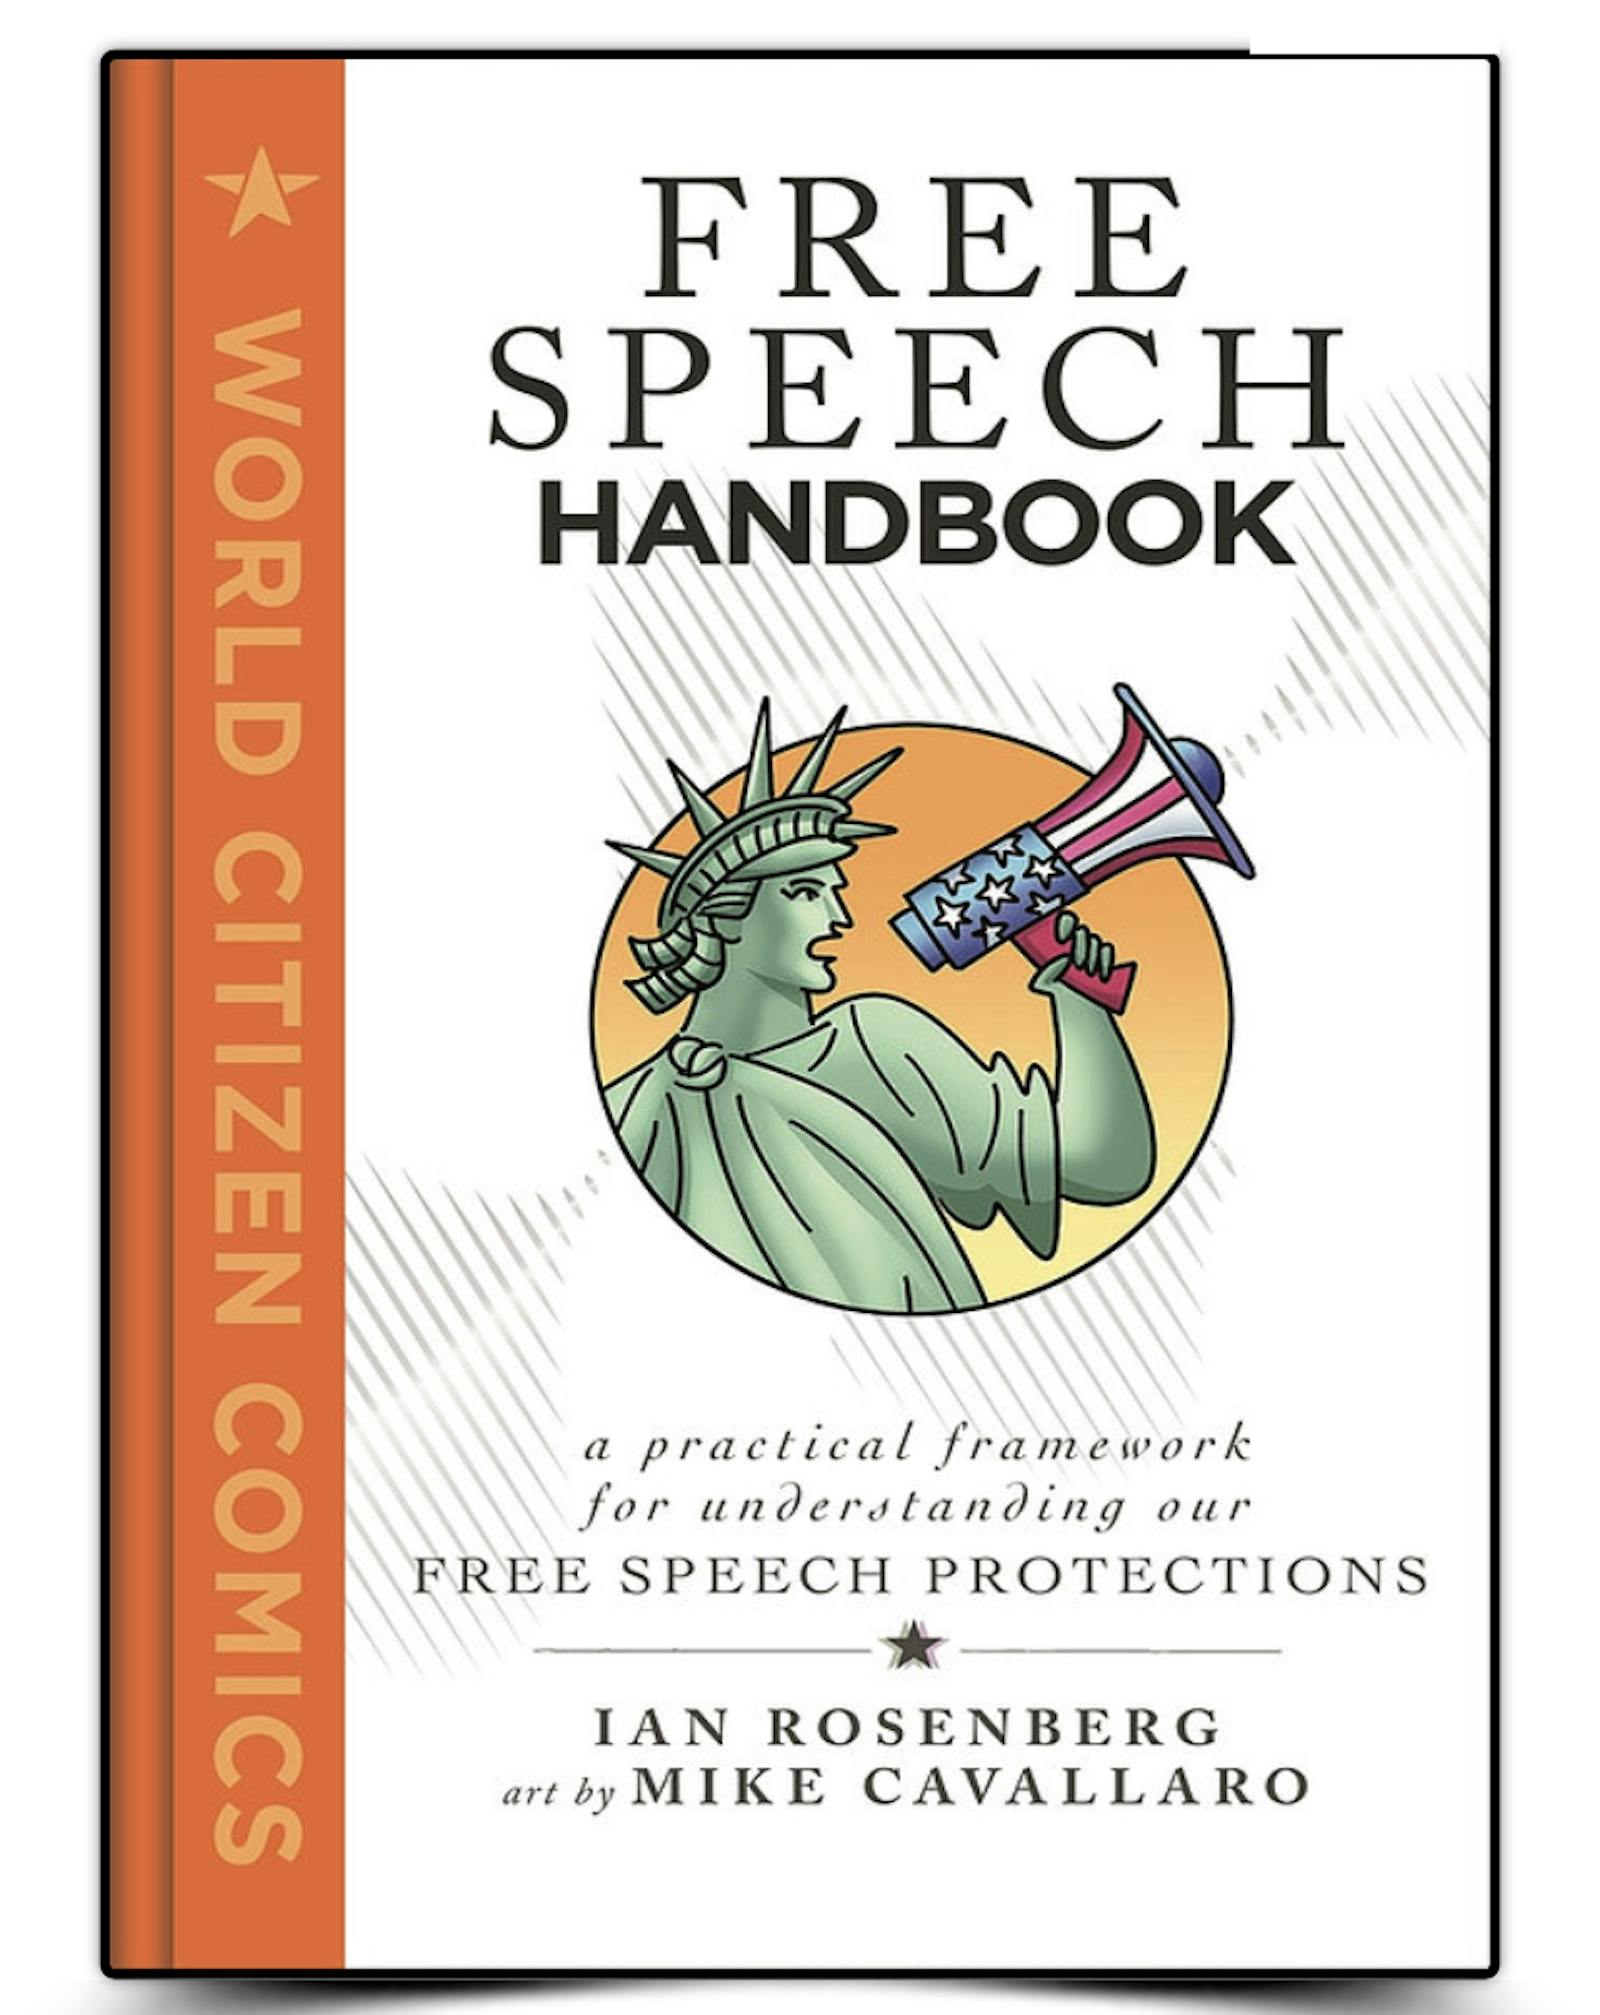 FREE SPEECH HANDBOOK